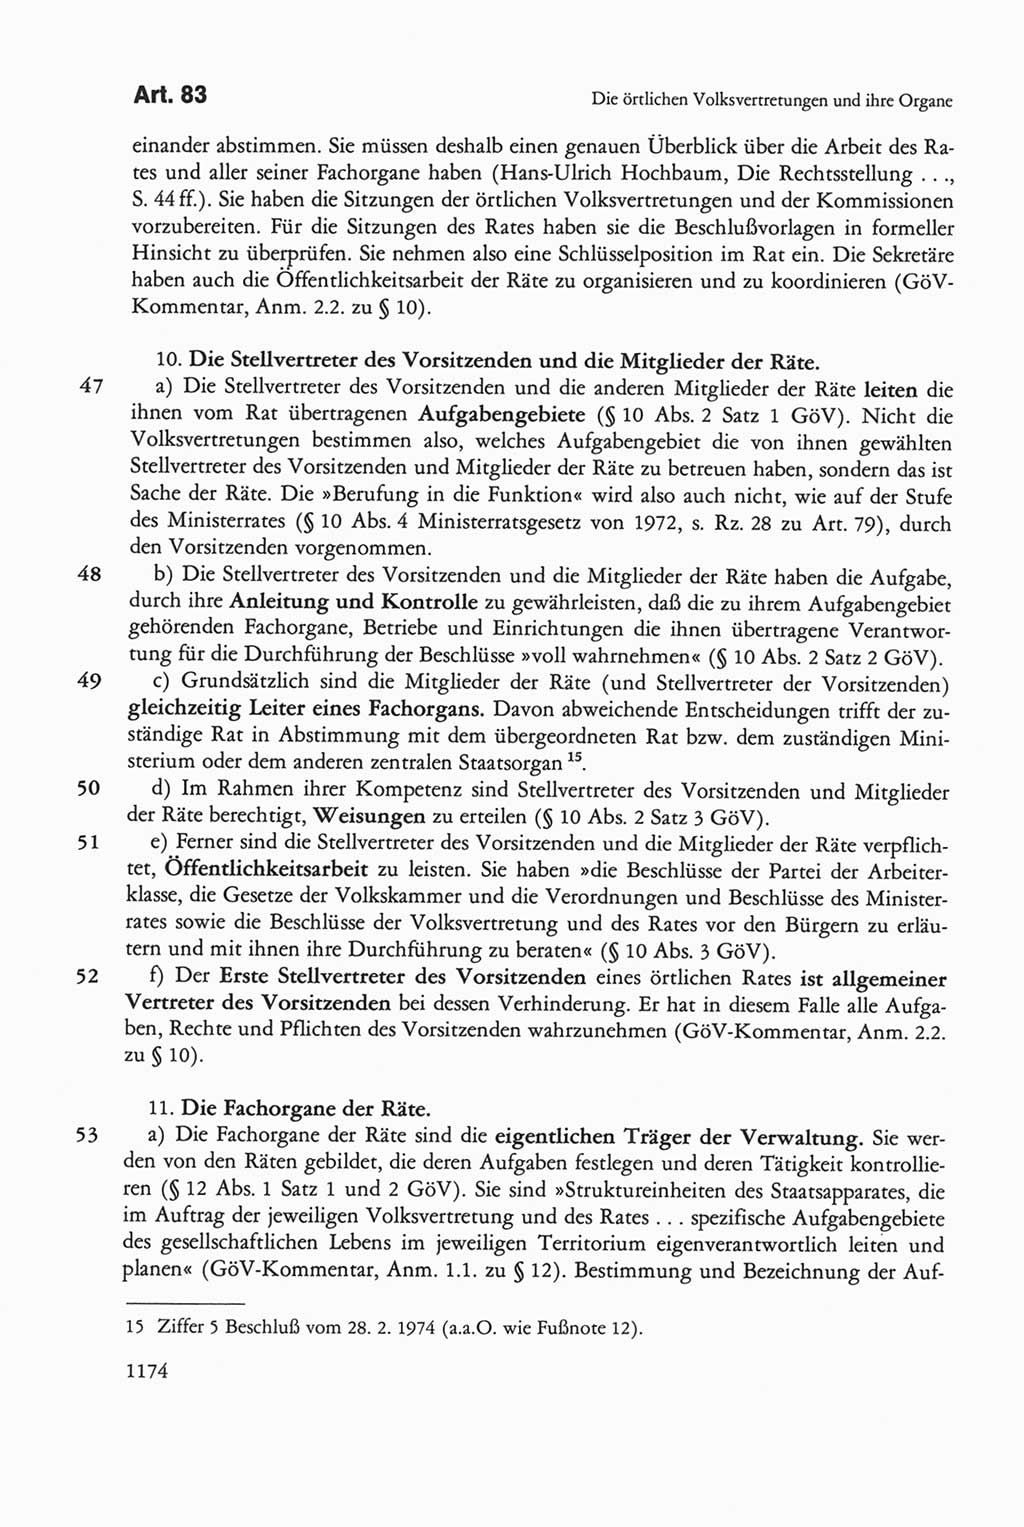 Die sozialistische Verfassung der Deutschen Demokratischen Republik (DDR), Kommentar mit einem Nachtrag 1997, Seite 1174 (Soz. Verf. DDR Komm. Nachtr. 1997, S. 1174)